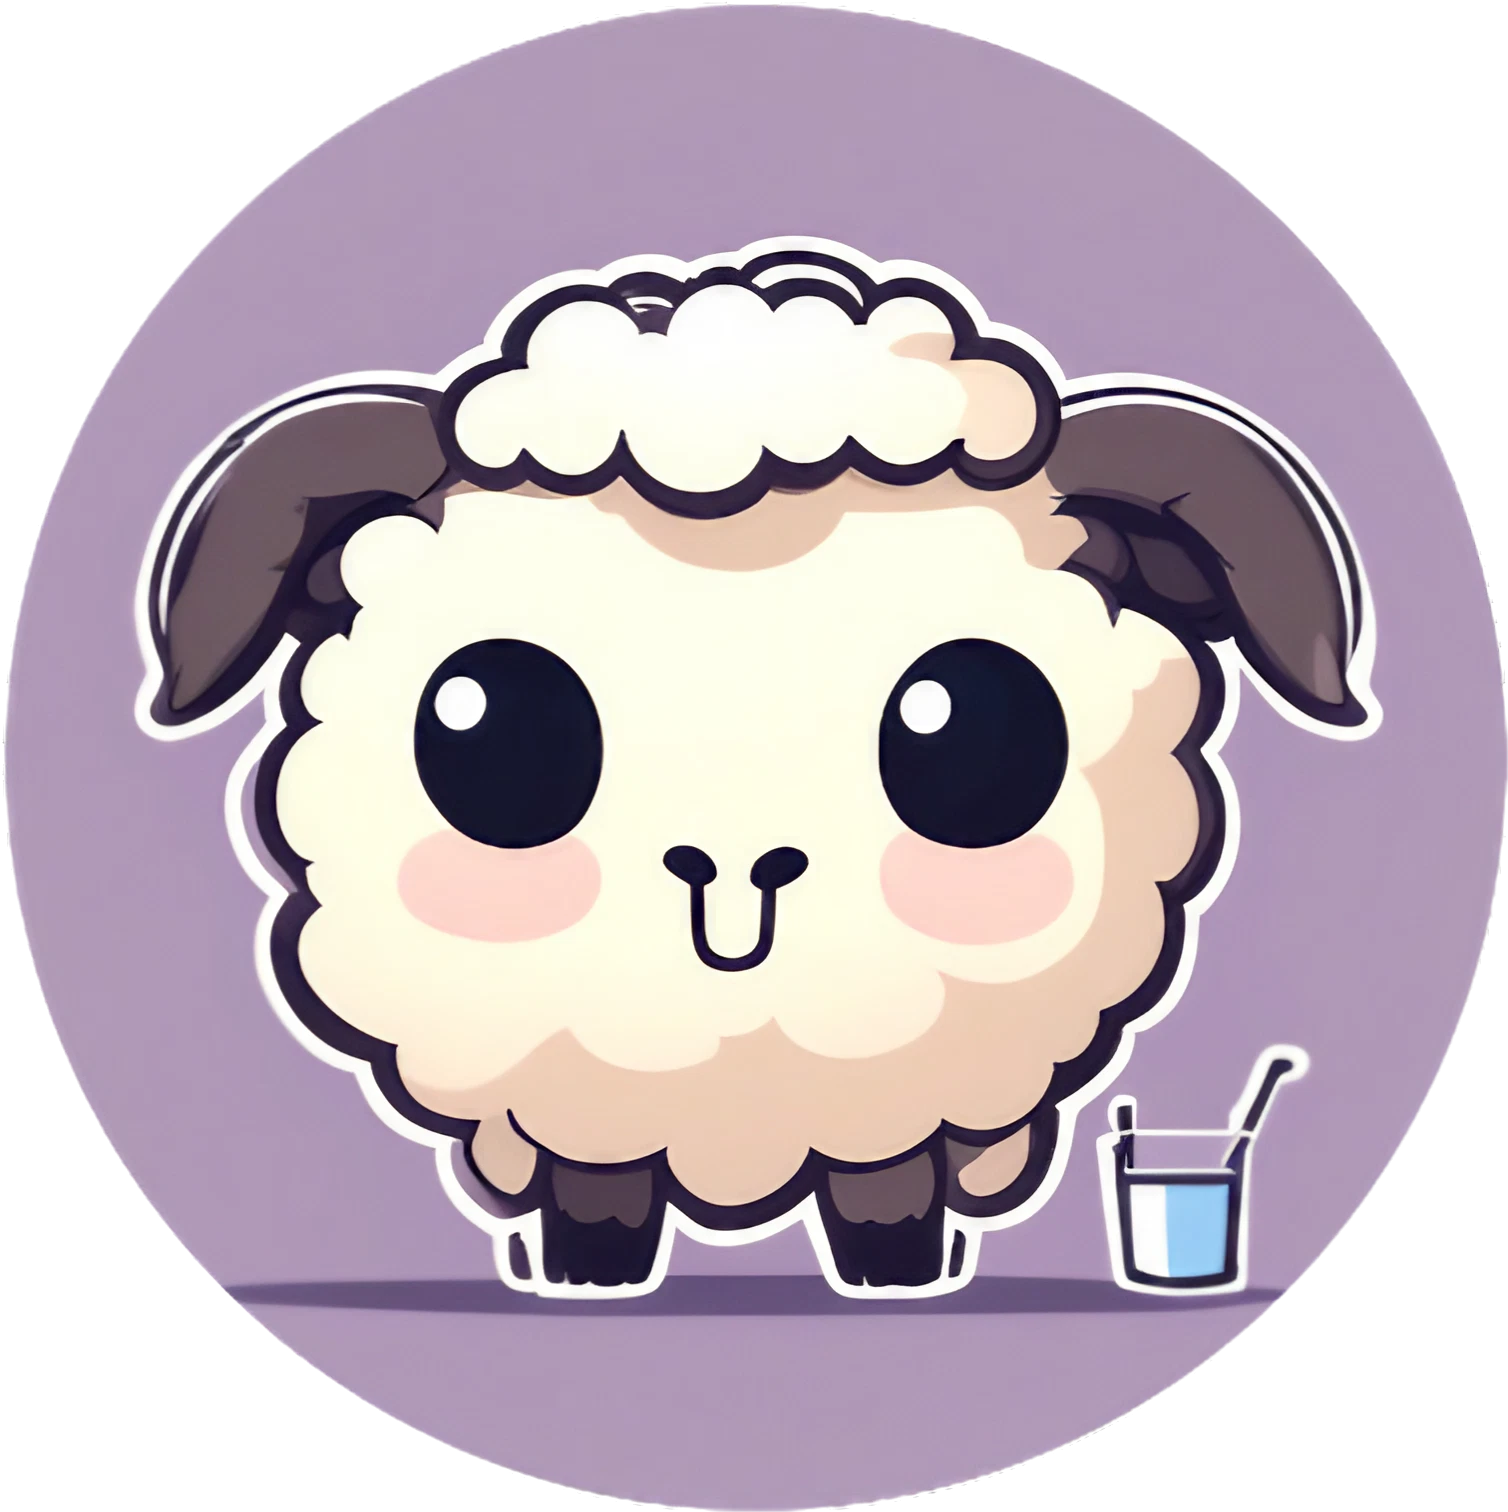 Happy Kawaii Schaf mit Erfrischung - Soo Cute - Sticker - 3x3cm